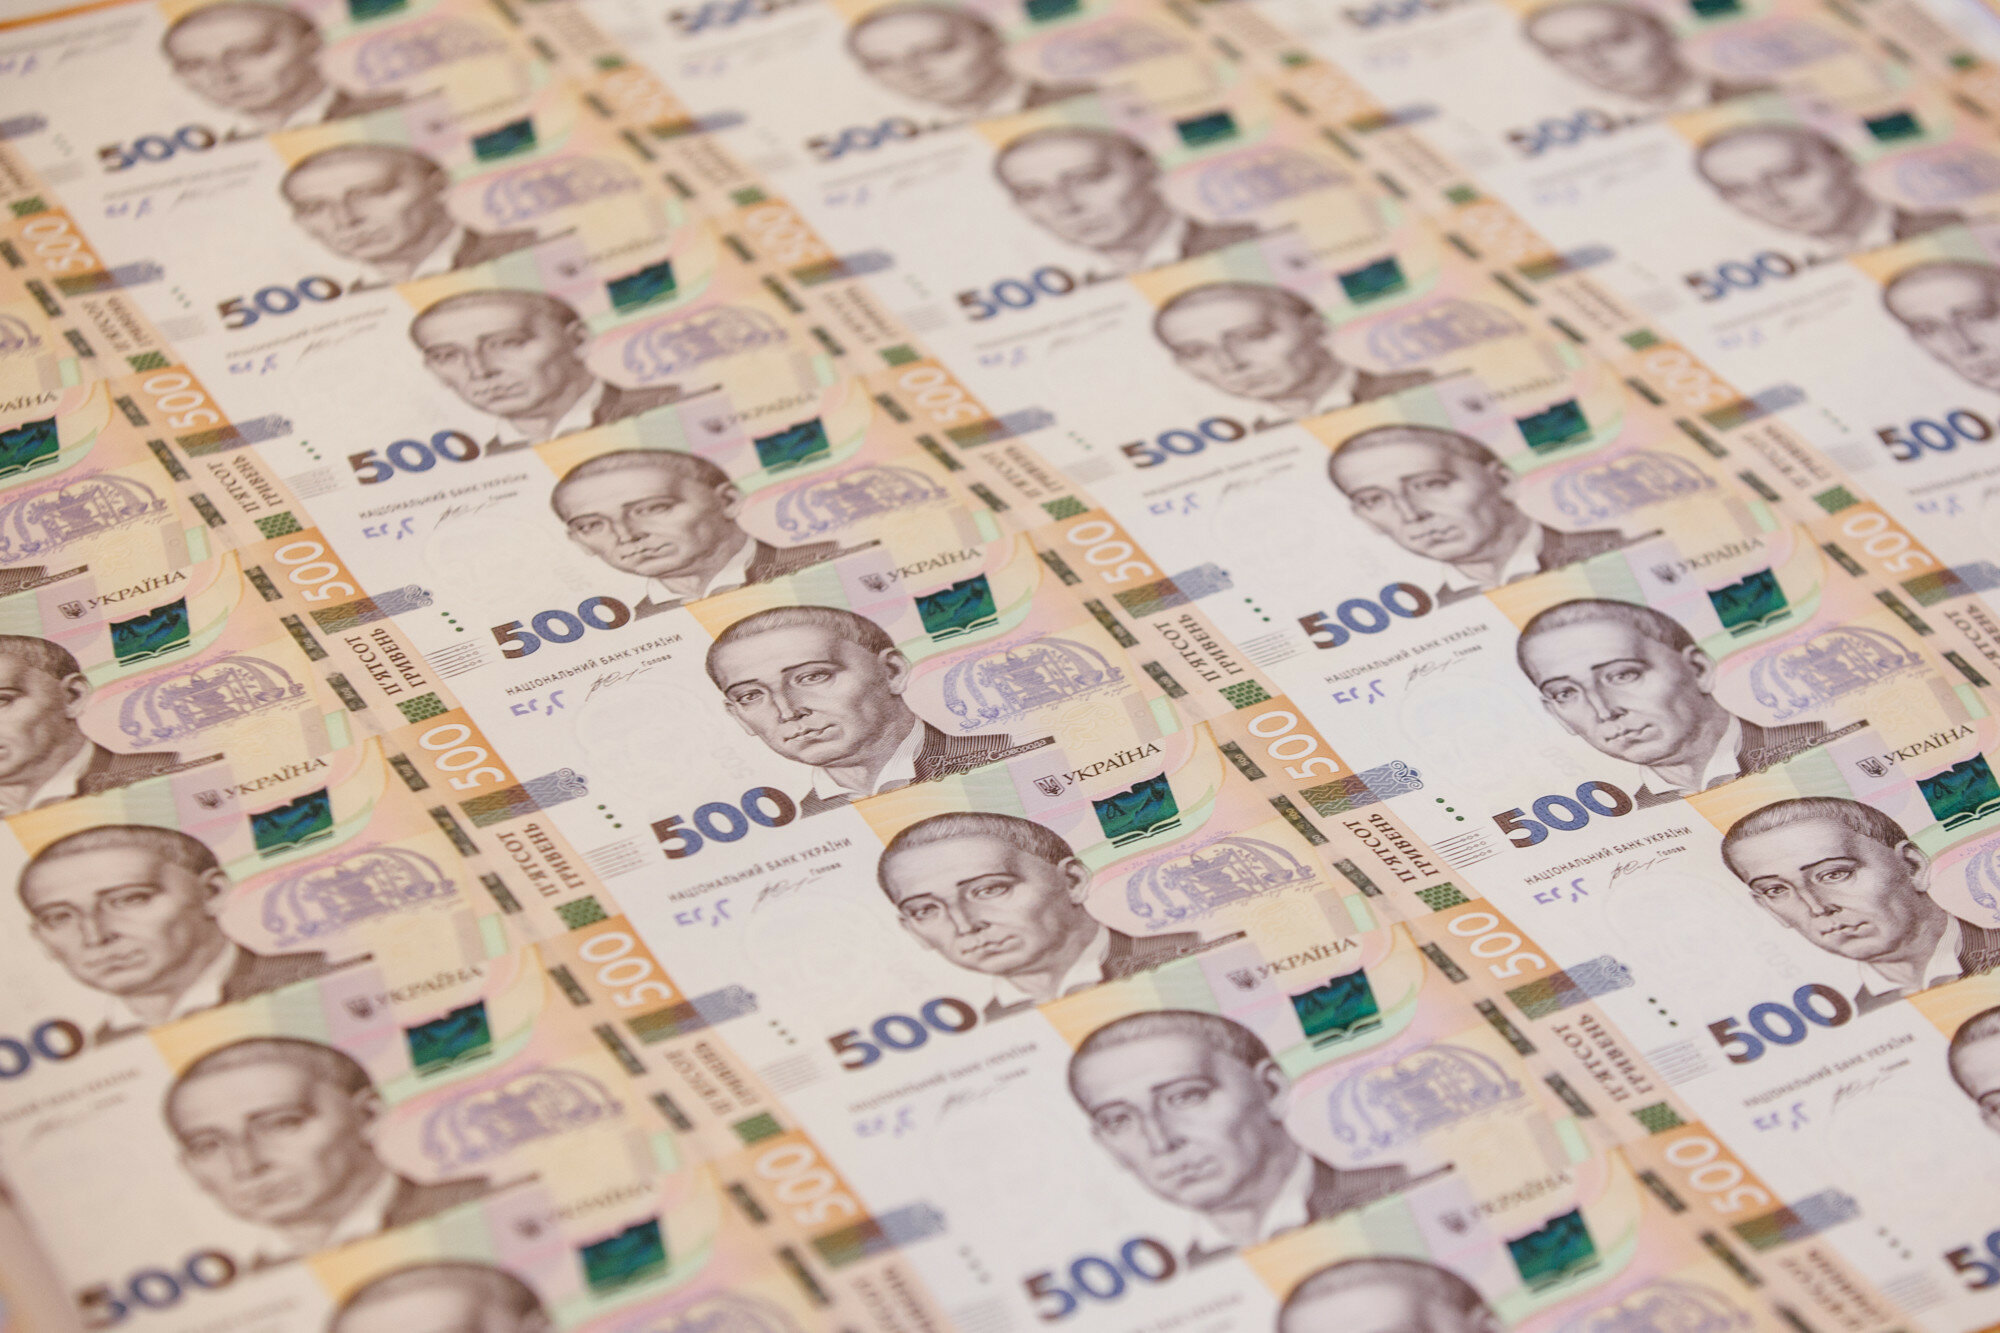 Поширення фальшивих грошей в Україні: як розпізнати підробку